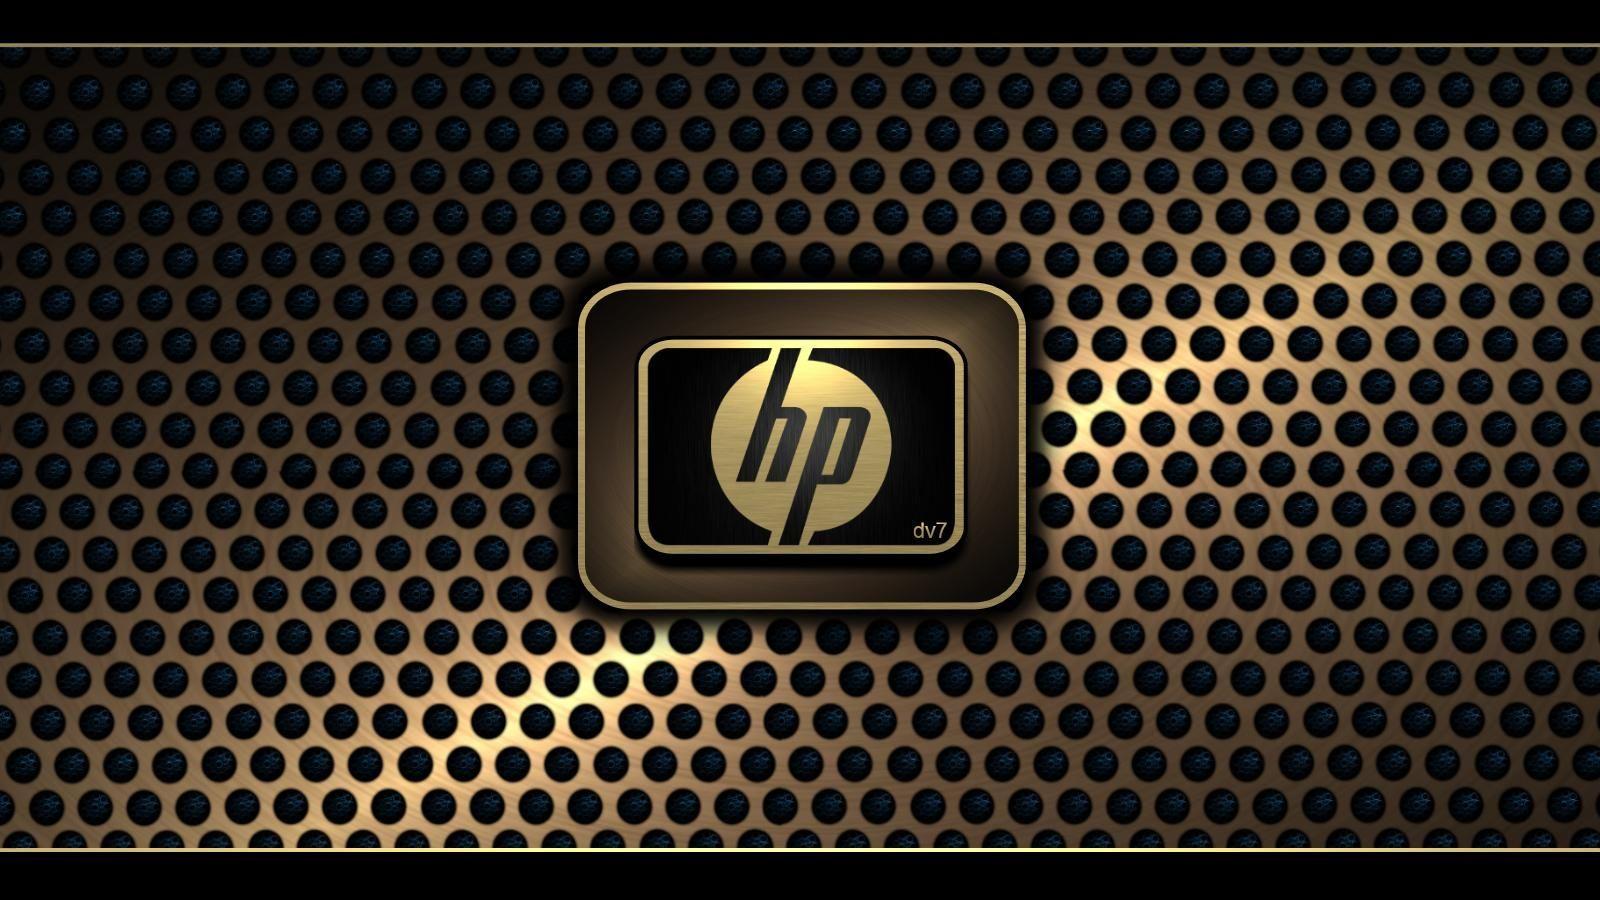 Wallpaper of new HP business laptops NotebookReview. HD Wallpaper